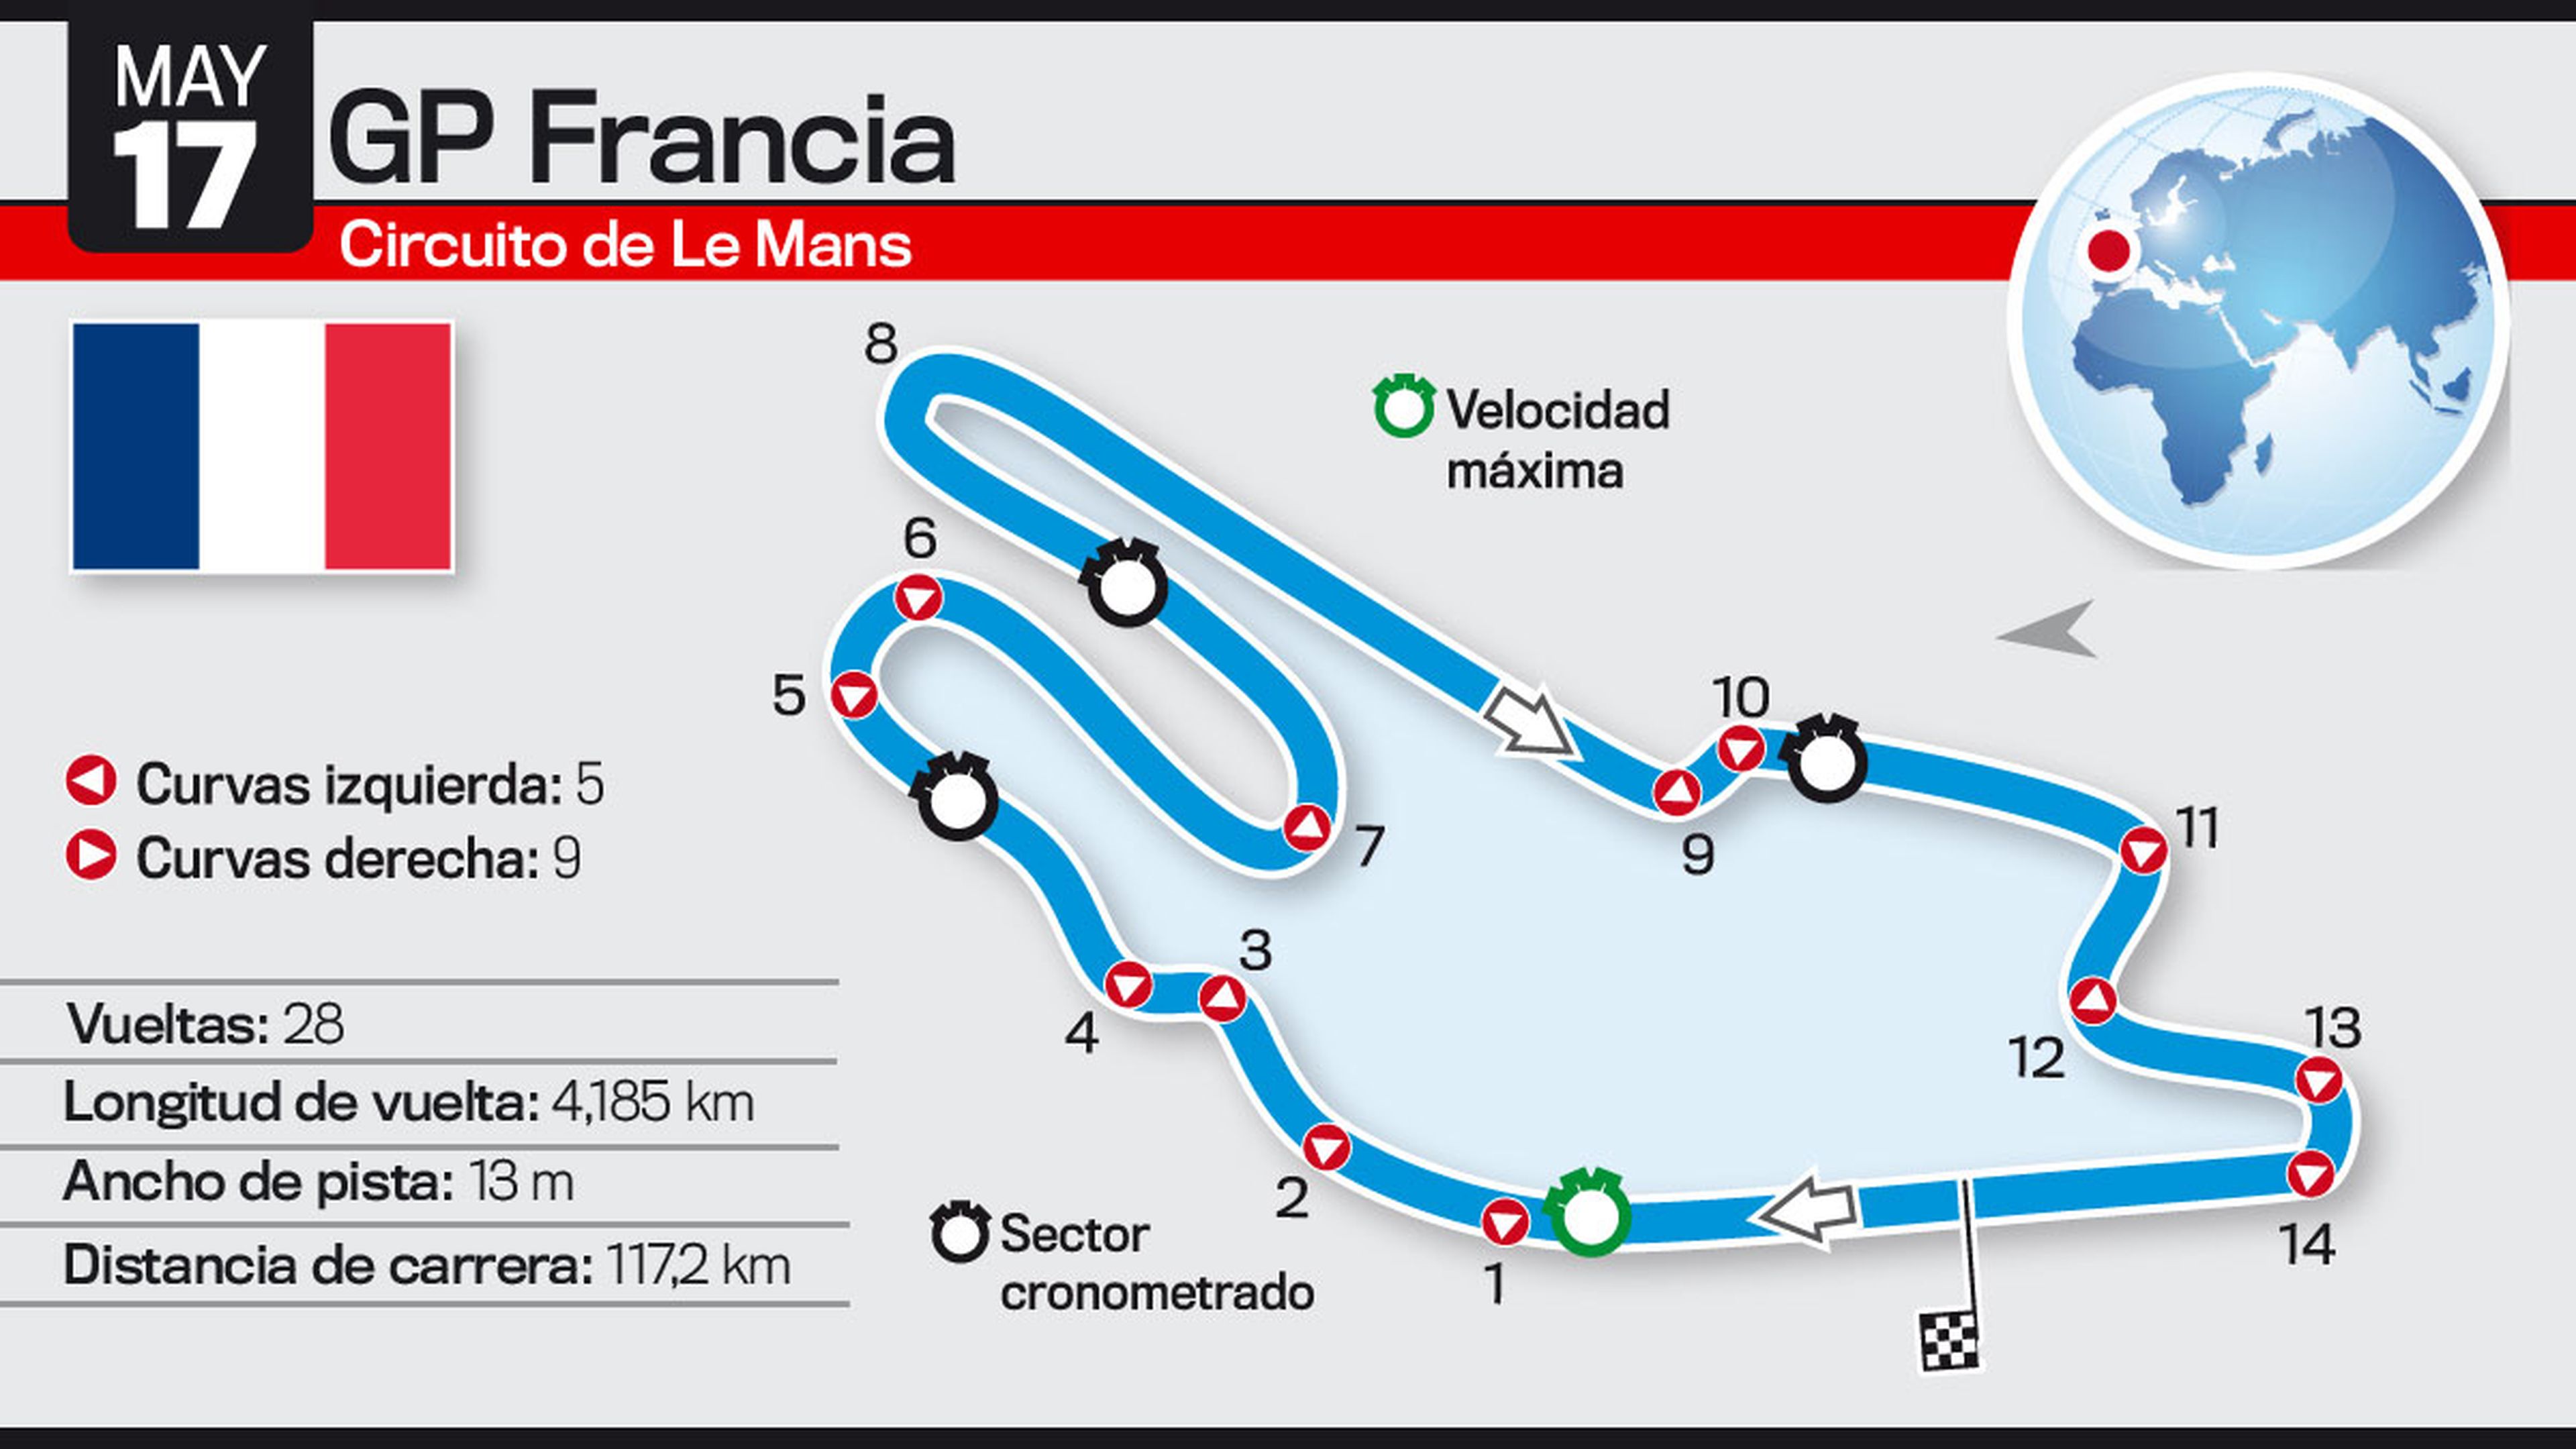 Así es el Circuito de Le Mans: GP Francia de MotoGP 2015